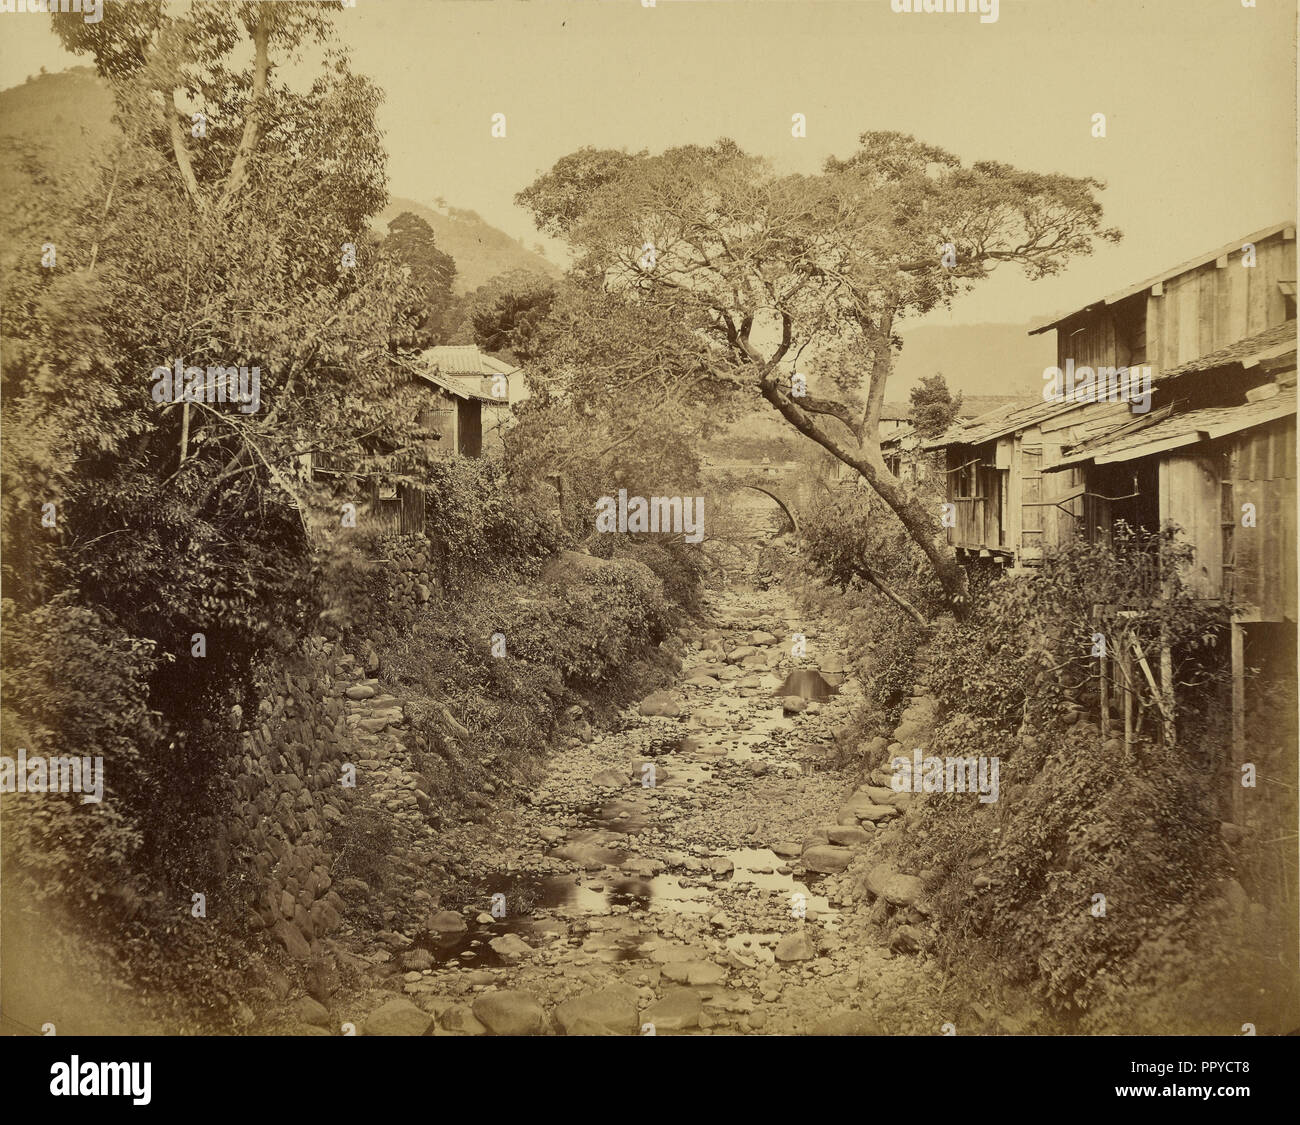 Japanischen Dorf mit Stream; Felice Beato, 1832-1909, 1862-1865; Eiklar silber Drucken Stockfoto